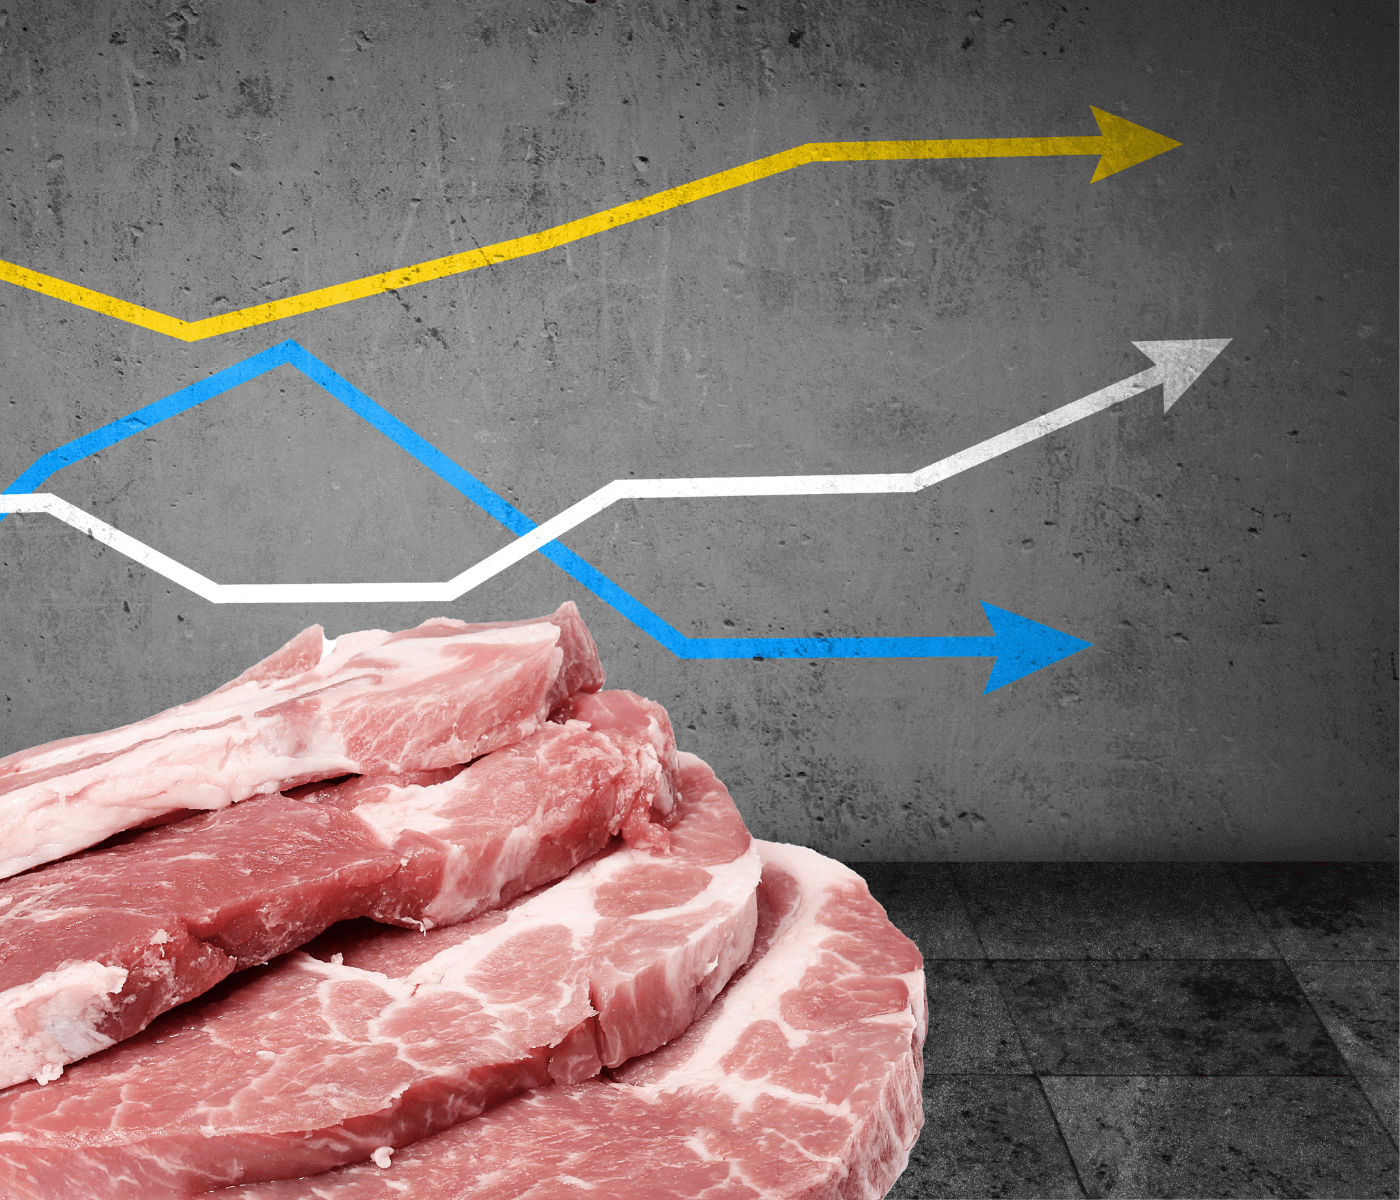 Suinocultura registra aumento na produção e exportação de carne suína e estabilidade no mercado doméstico em 2023